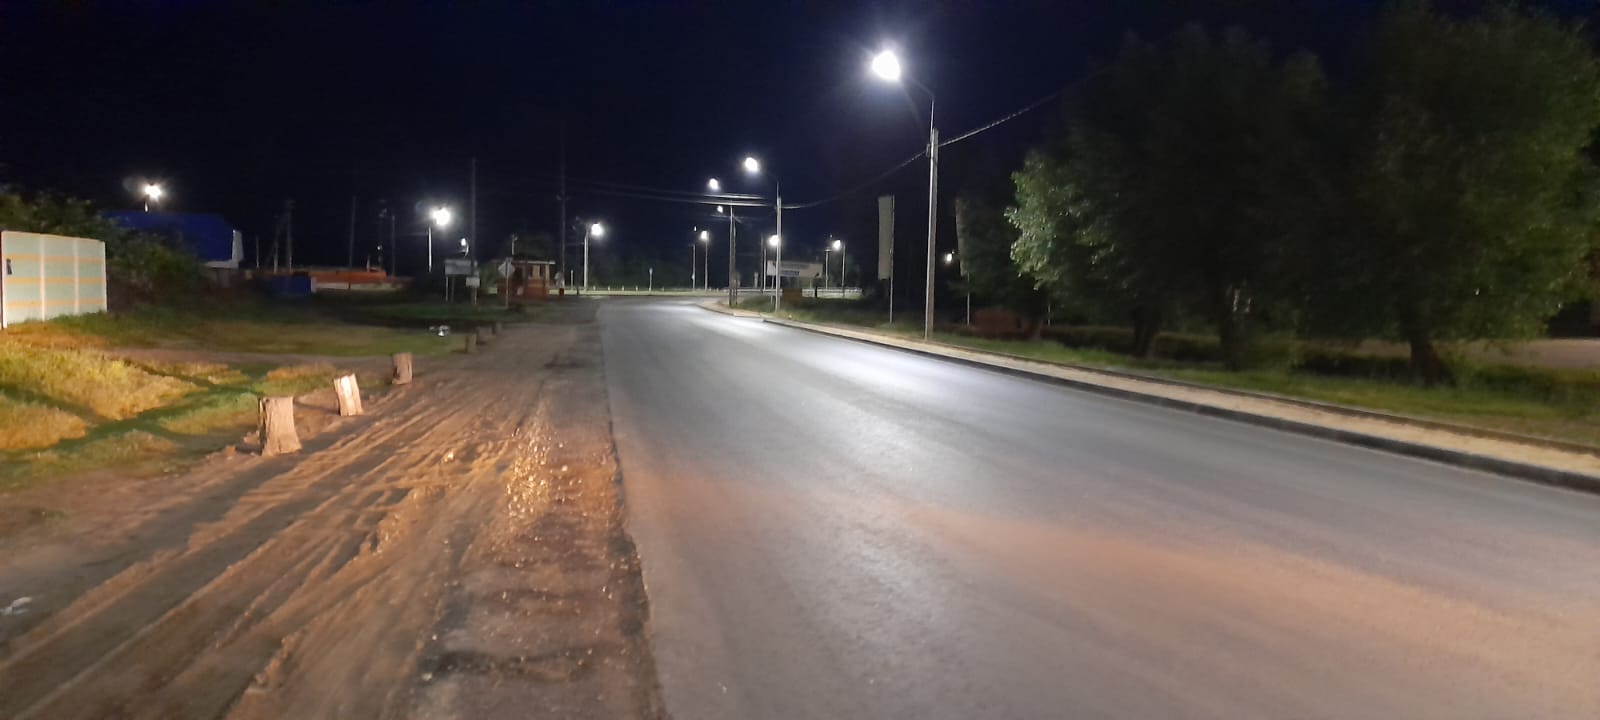 ПЗС помог с организацией освещения автодороги в Брянской области